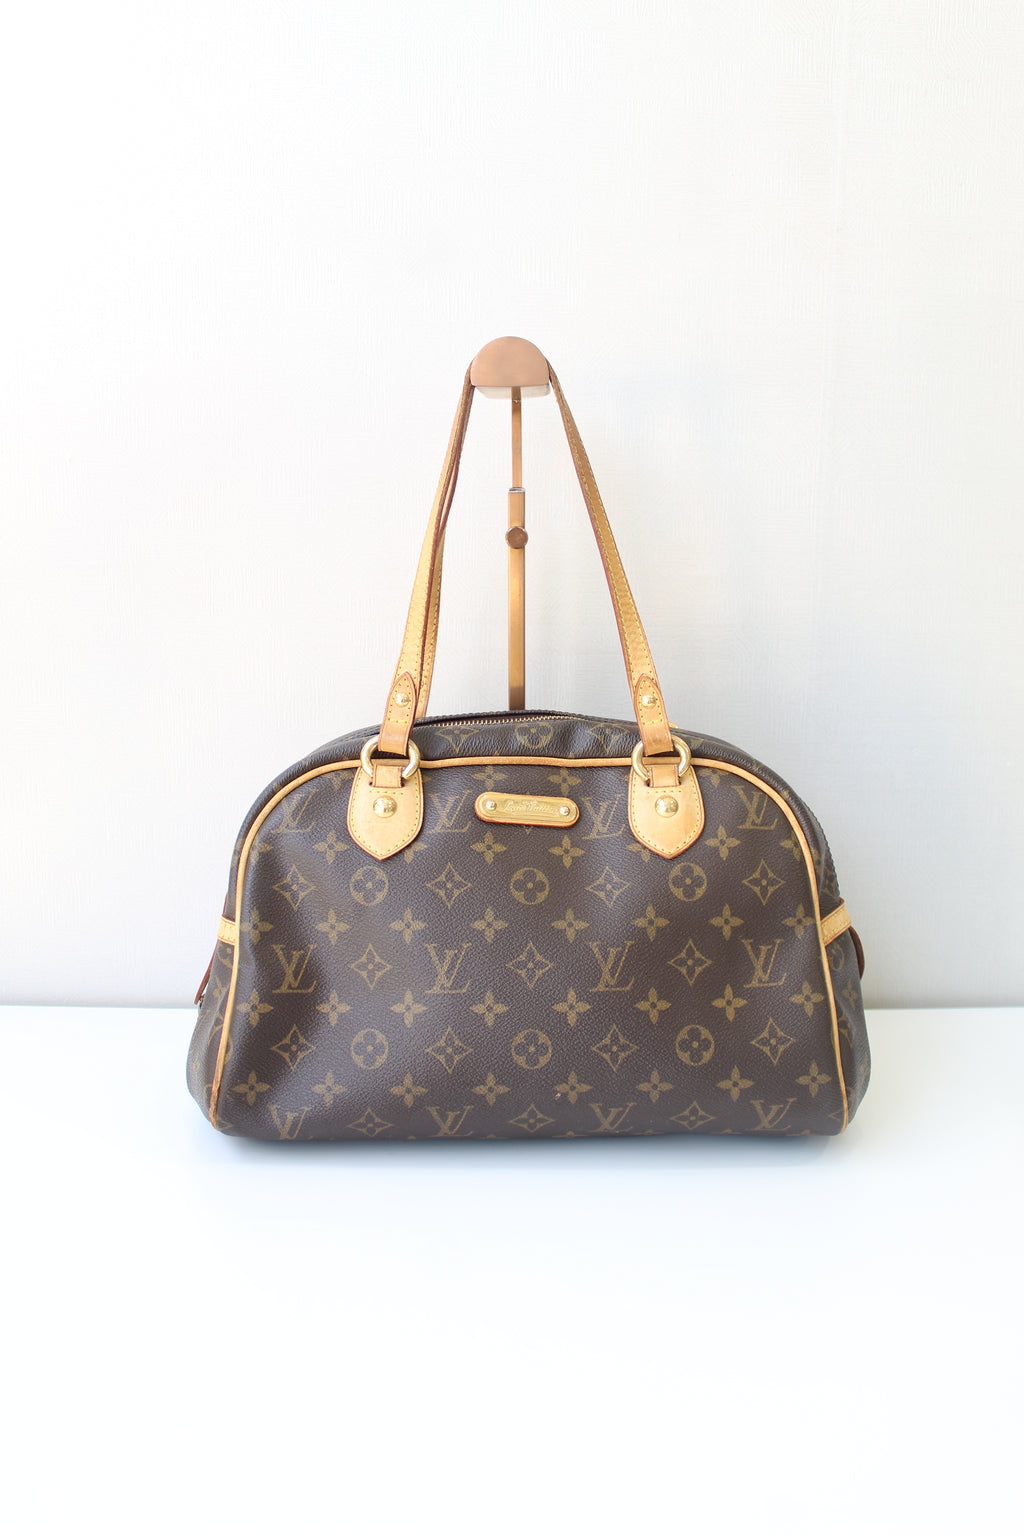 Louis Vuitton Bum Bag – Closet Connection Resale